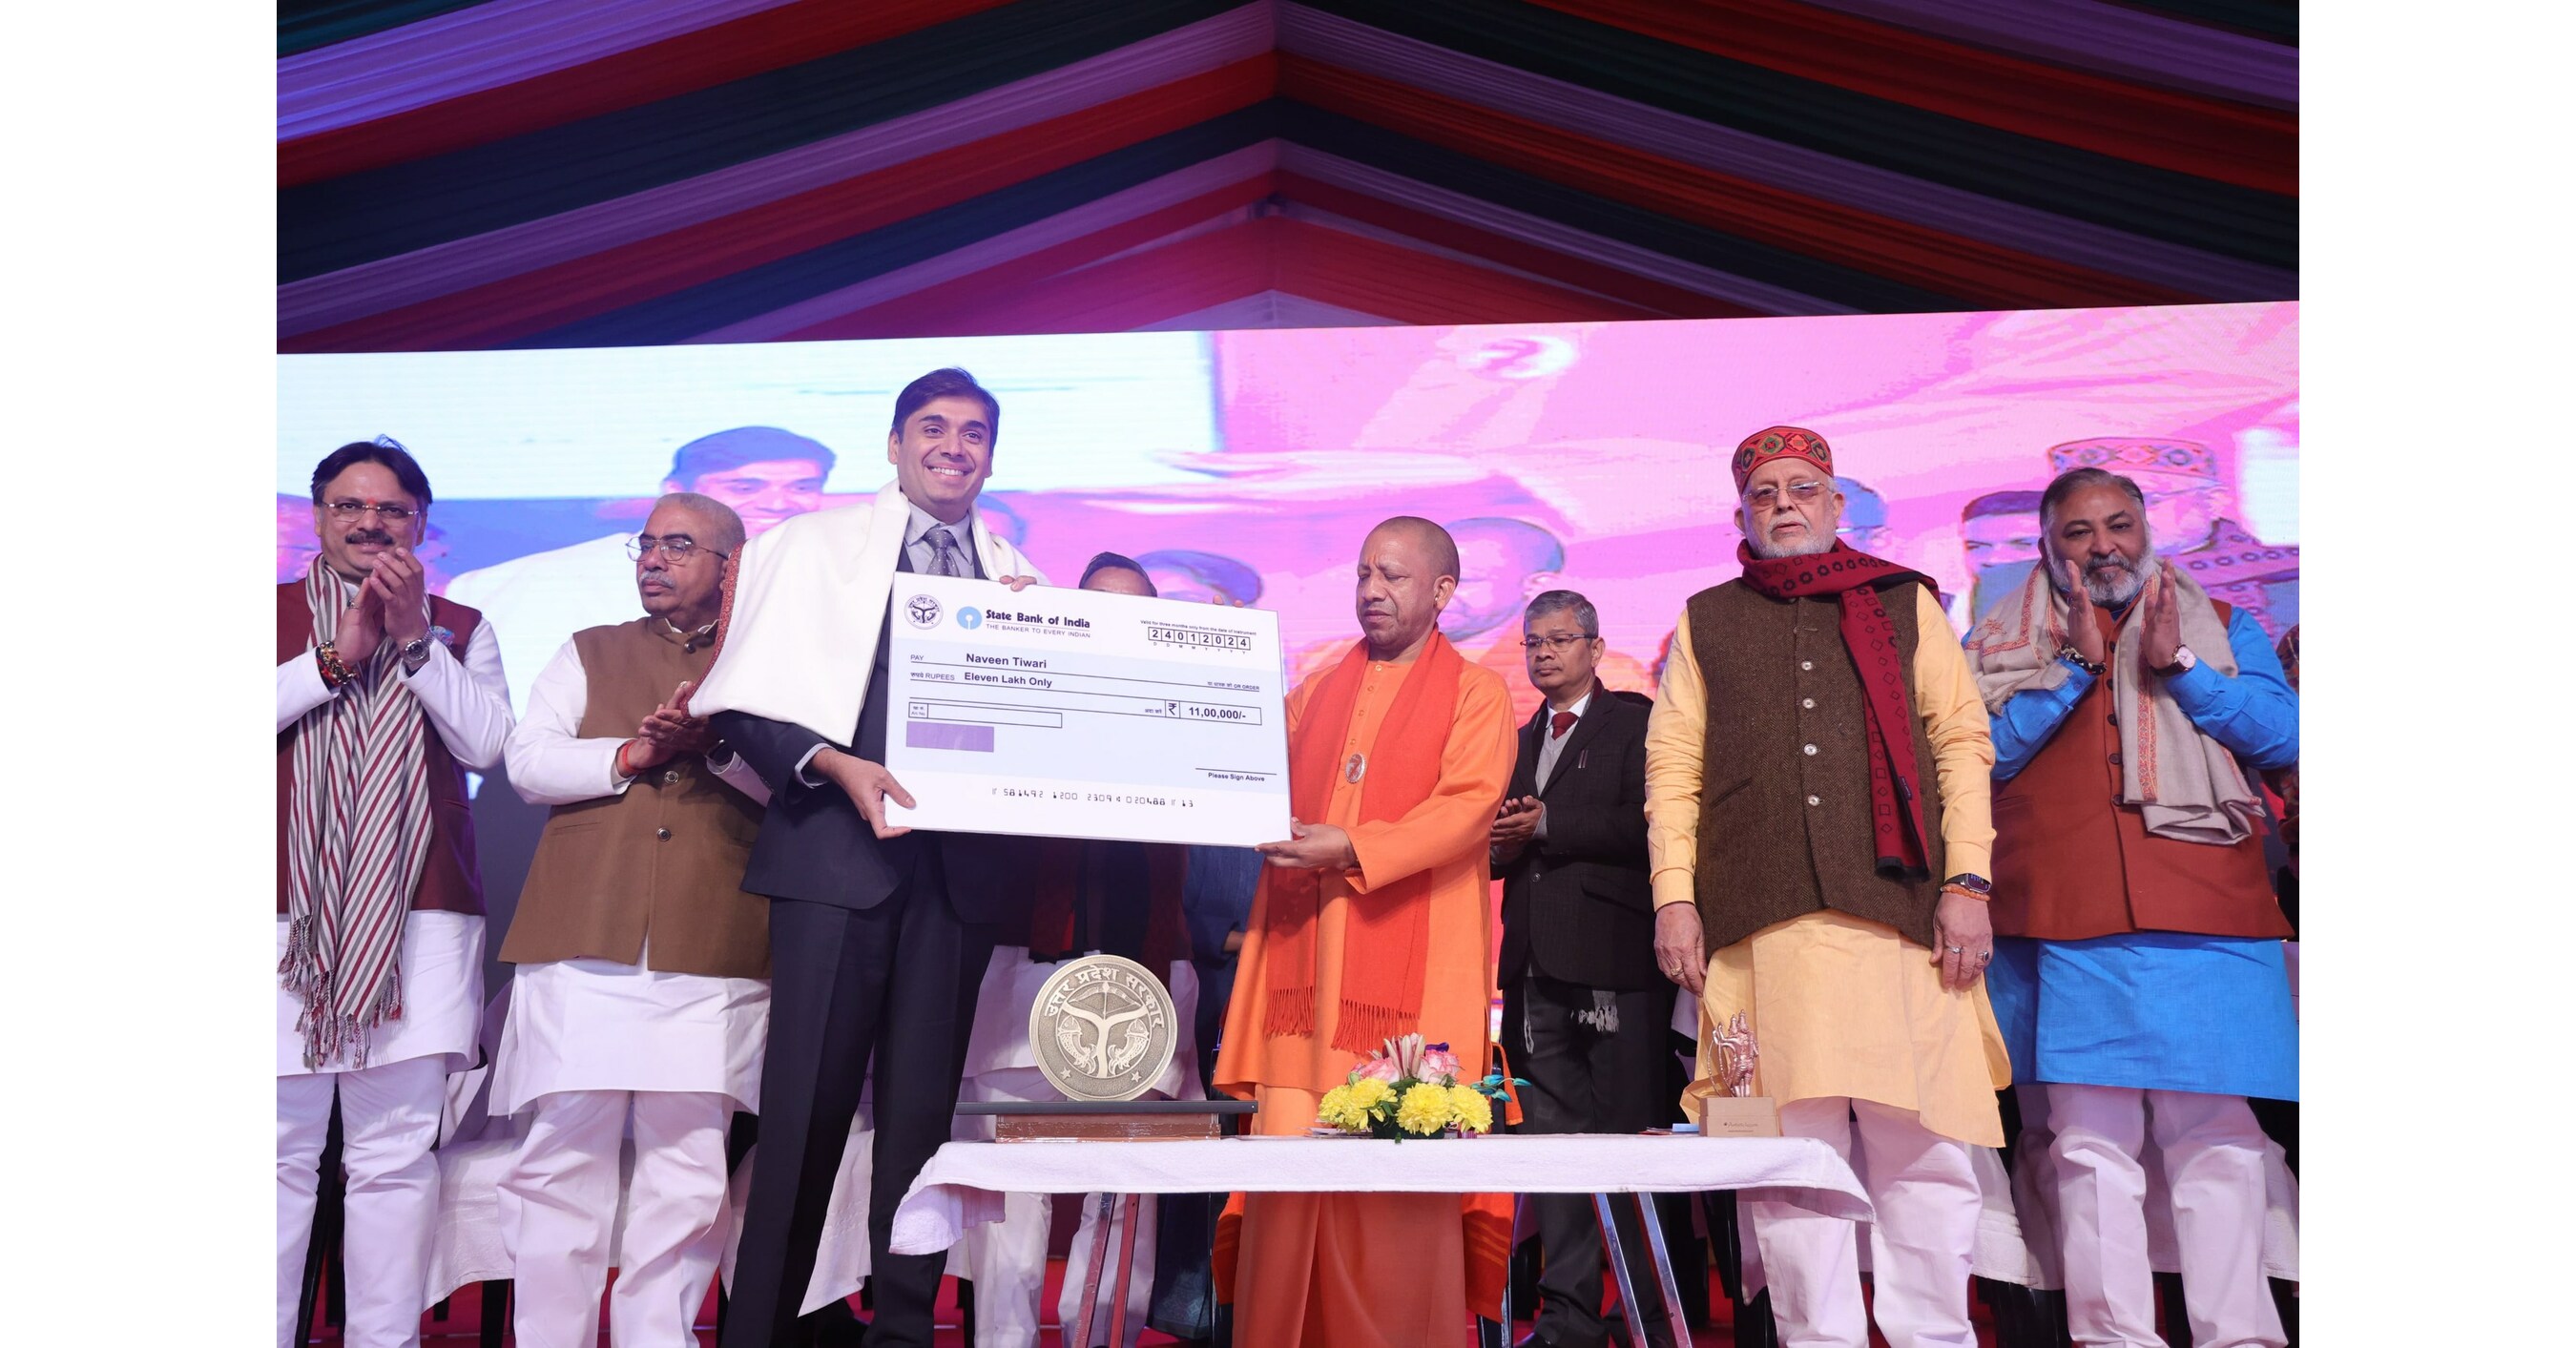 Pendiri unicorn kembar Naveen Tewari menerima Penghargaan Uttar Pradesh Gaurav Samman;  Diakui karena mengangkat sektor startup India menjadi terkenal secara global